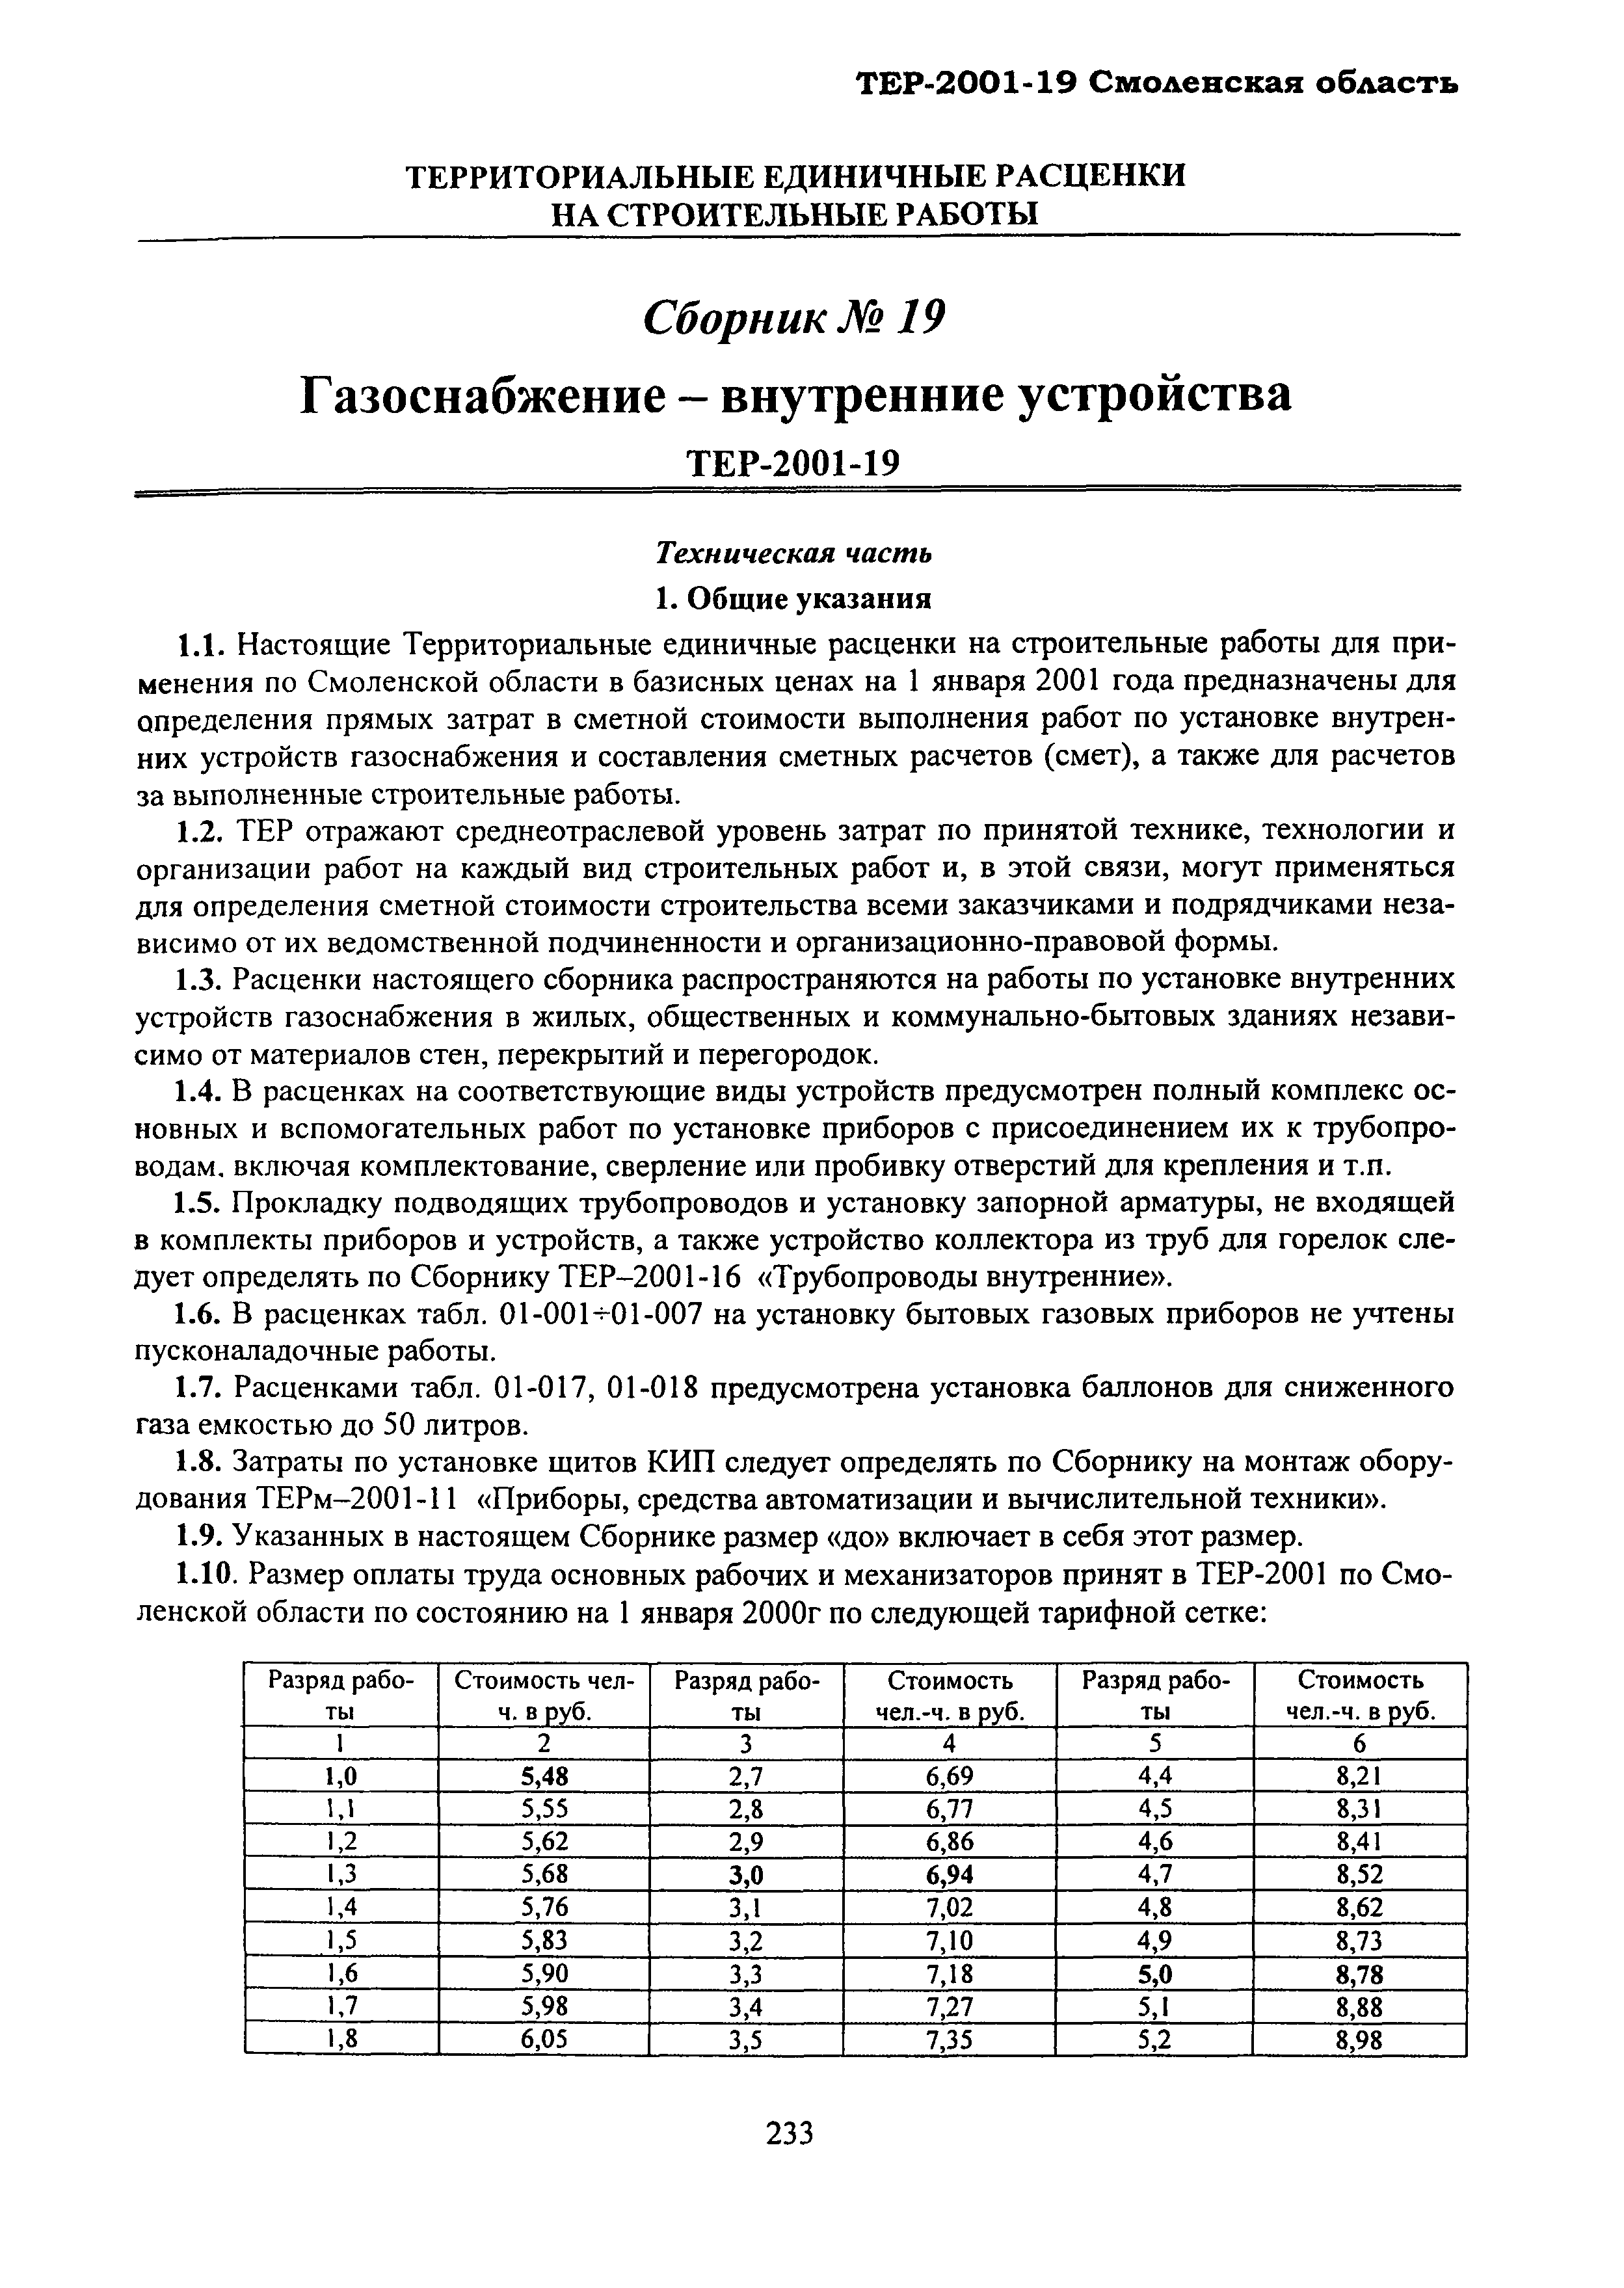 ТЕР Смоленская область 2001-19